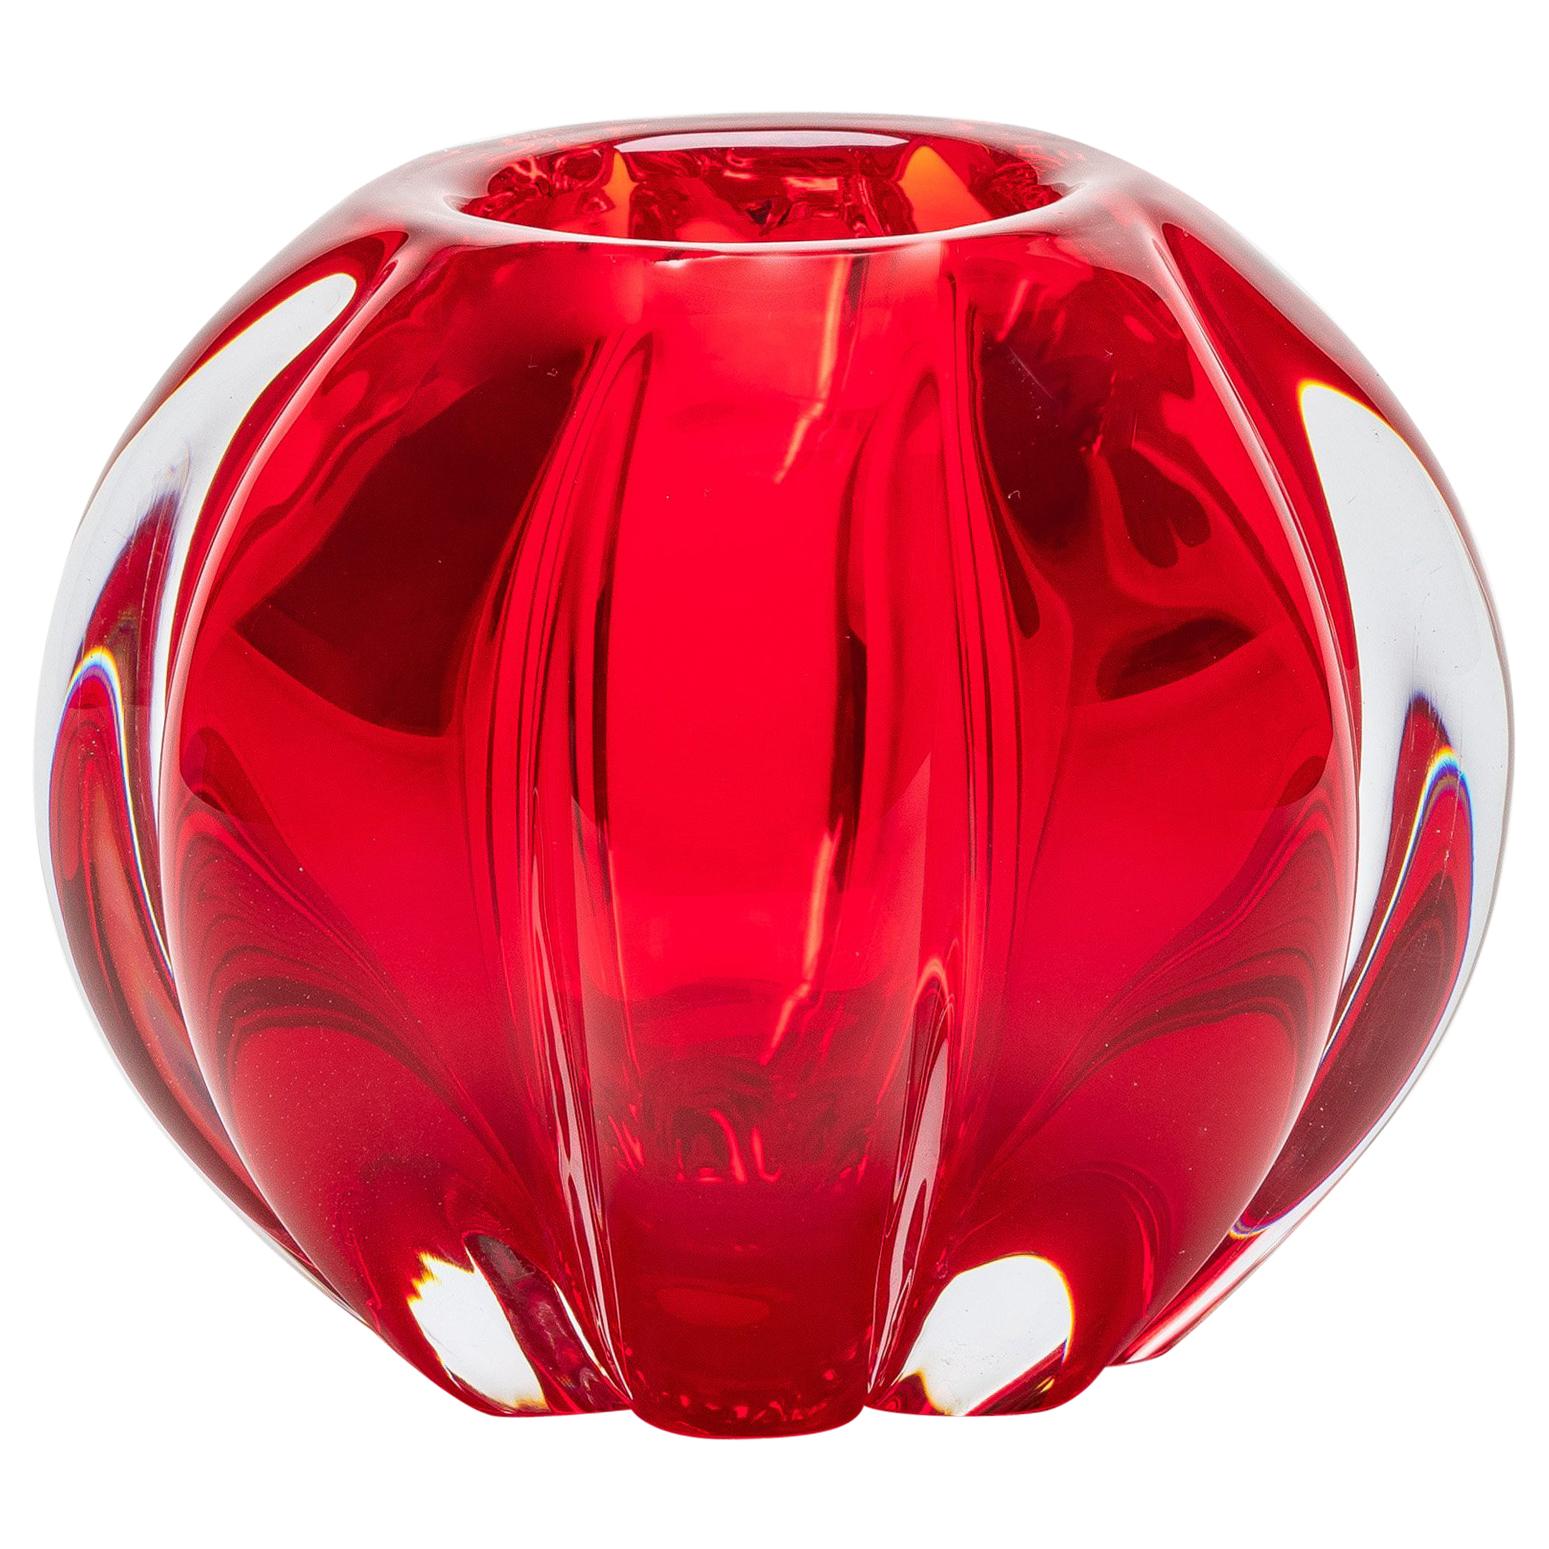 Yali Murano Hand Blown Fiori Bolla Vase Small Red For Sale